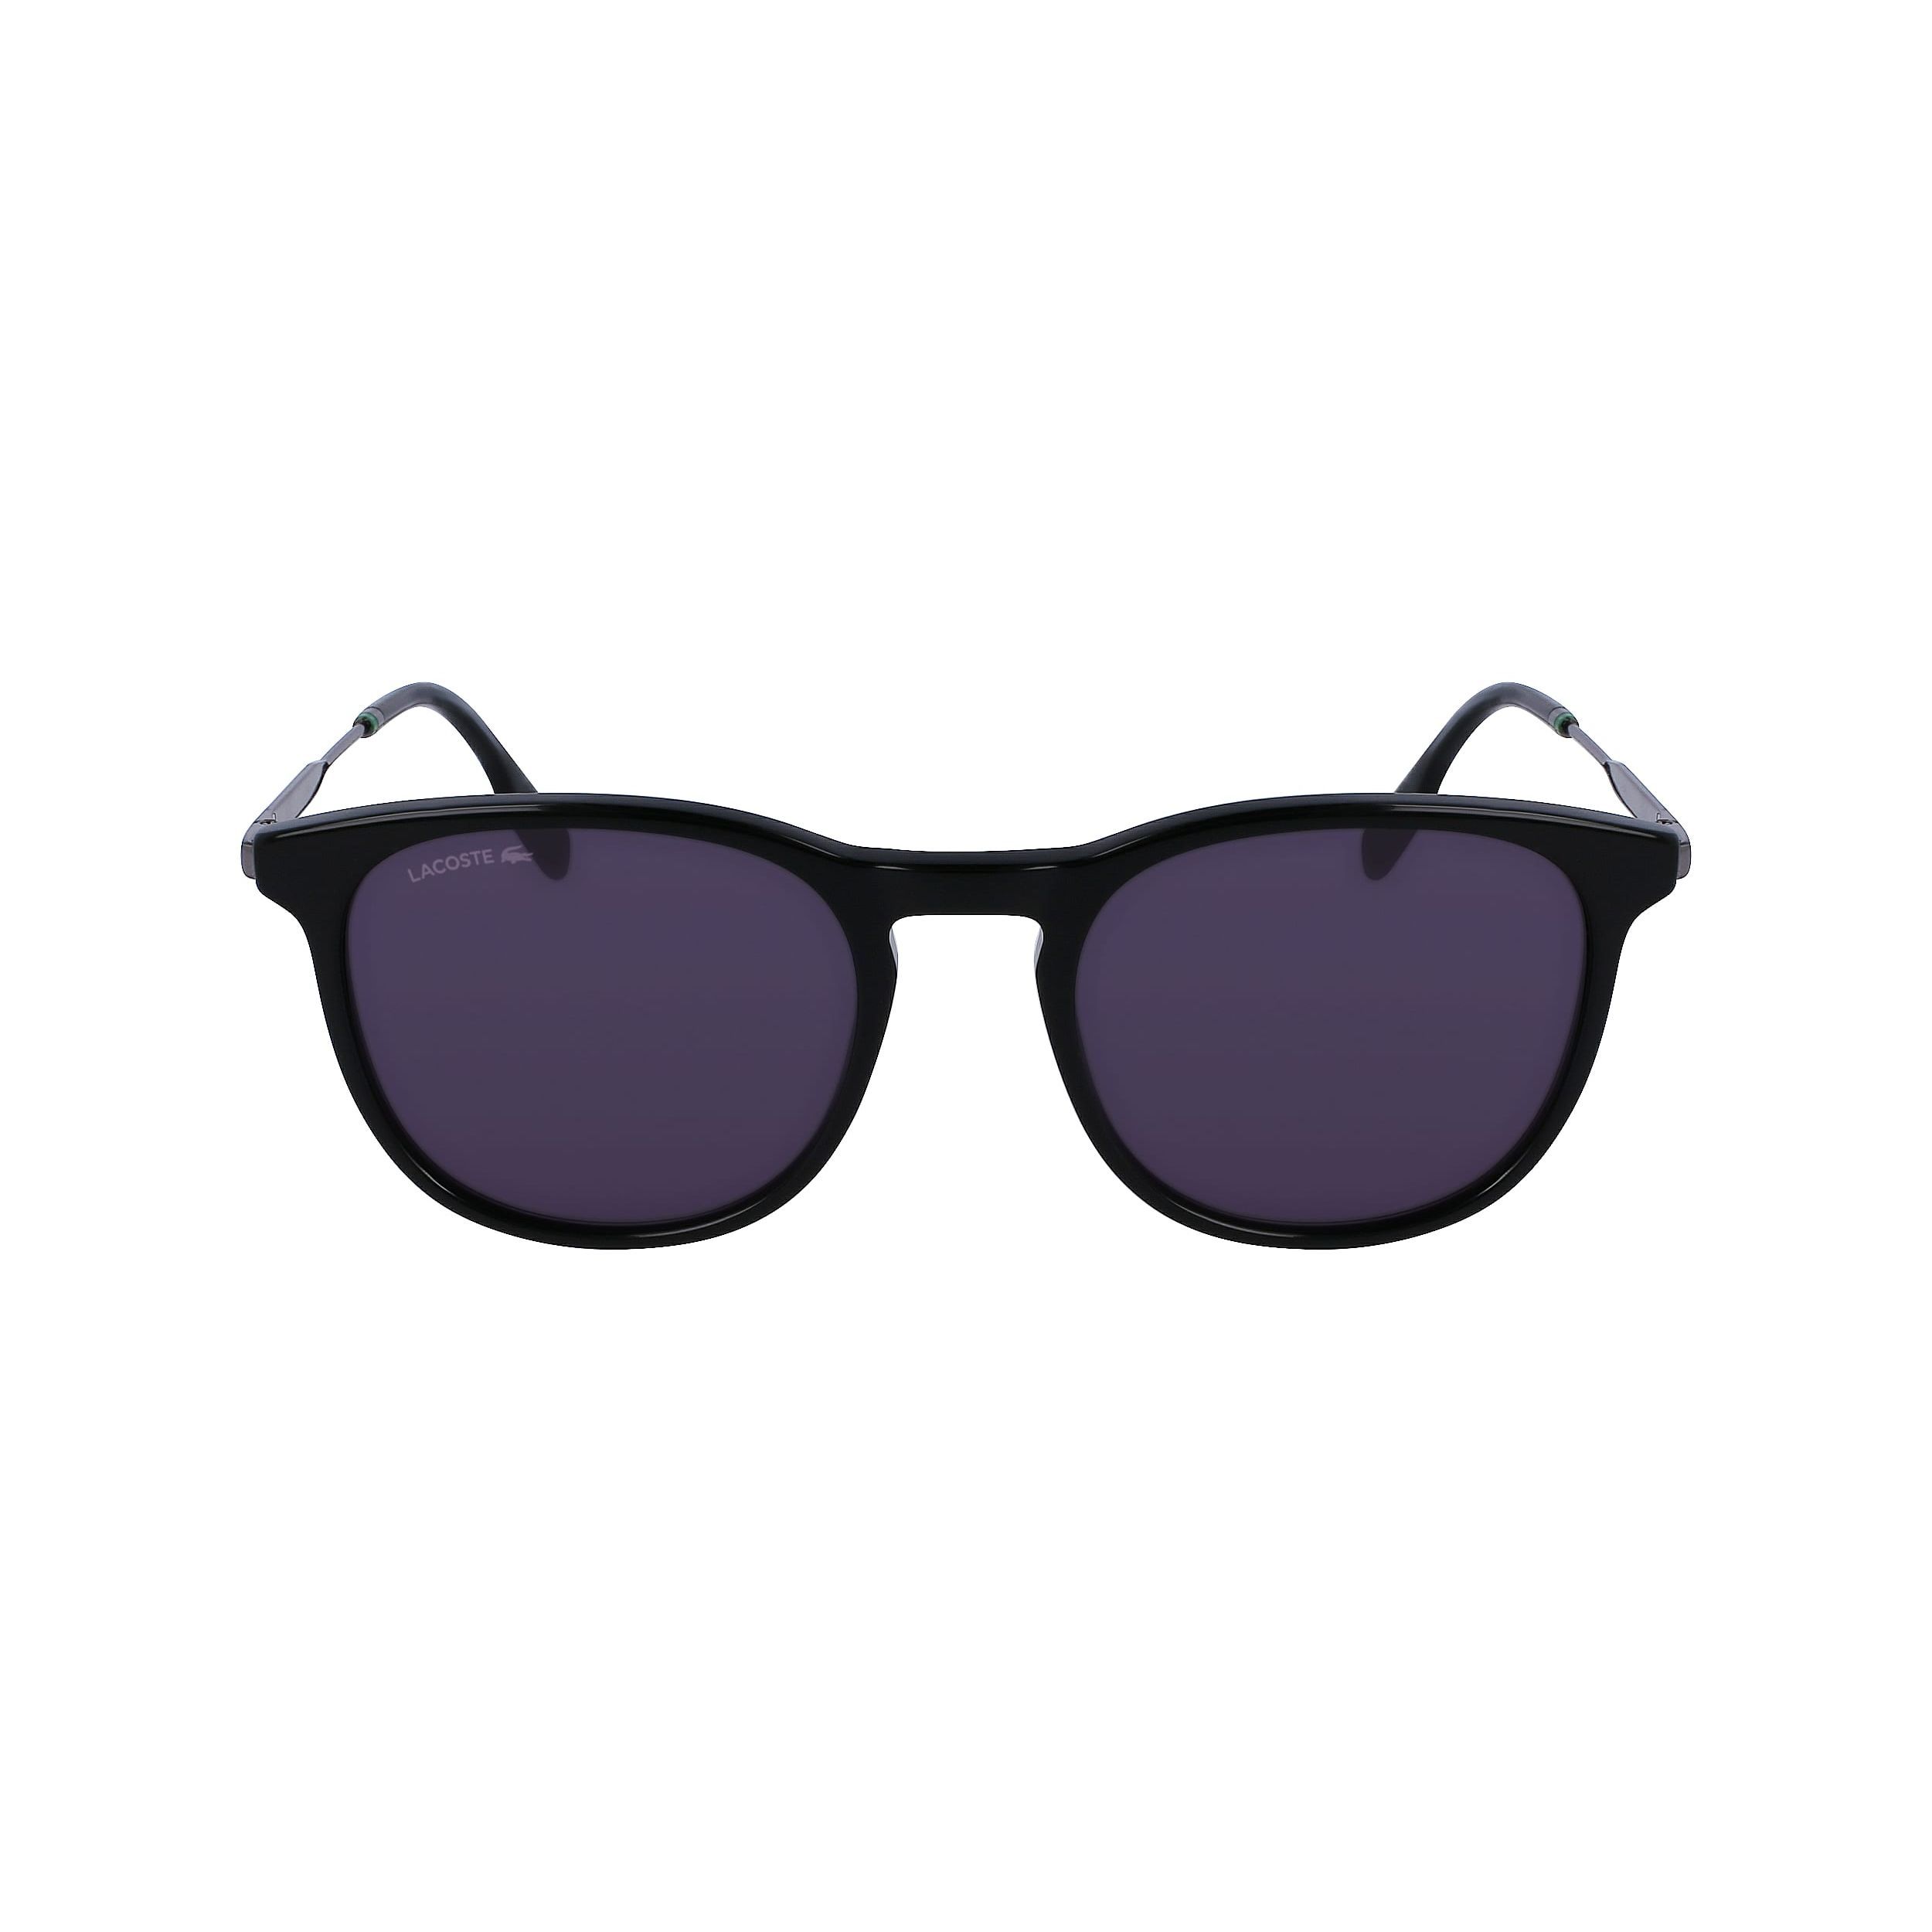 L994S Panthos Sunglasses 001 - size 53